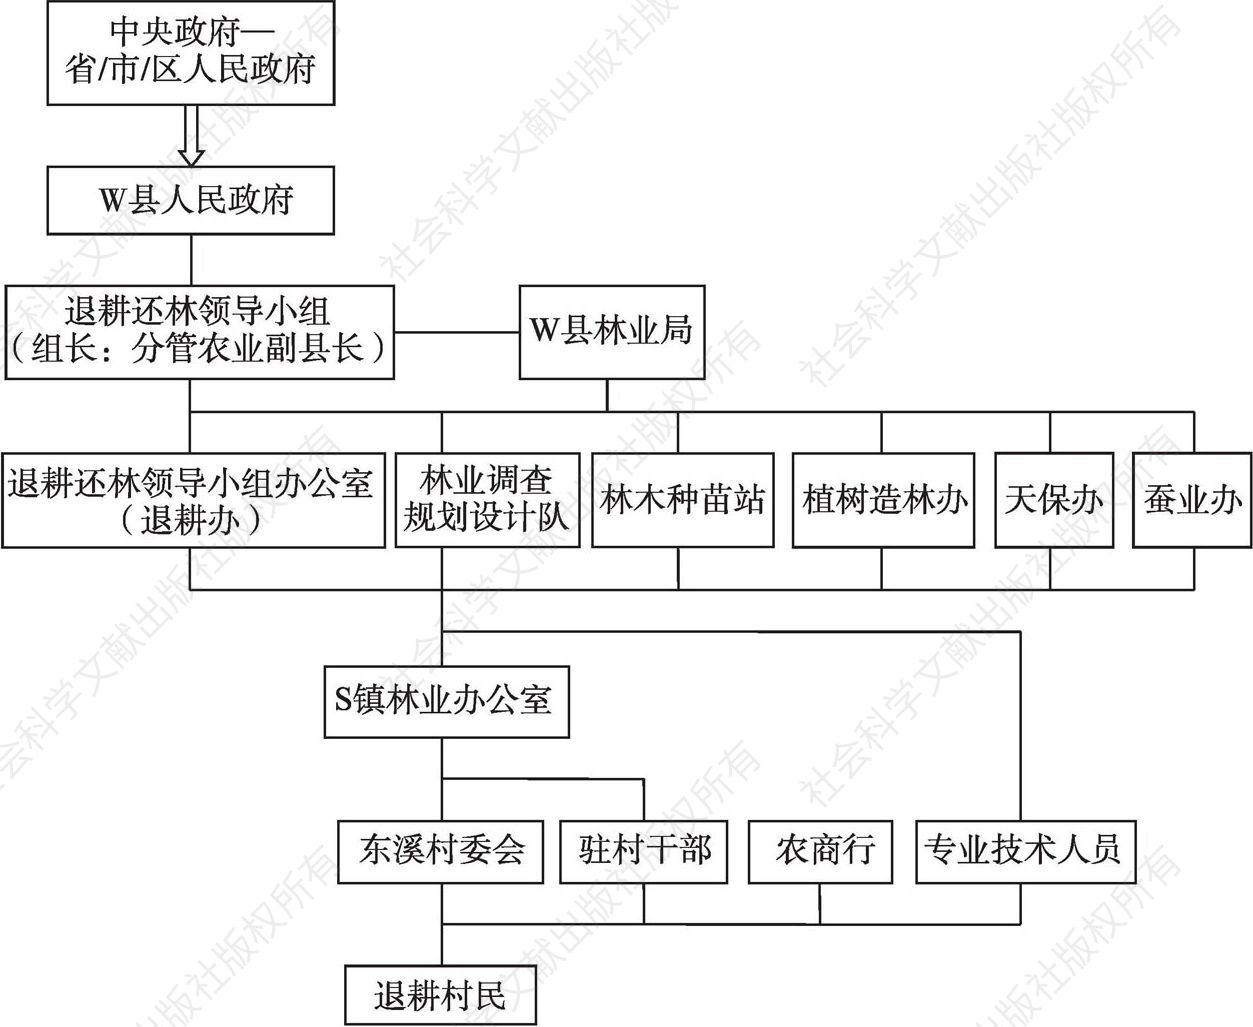 图4-3 W县退耕还林政策实施组织结构